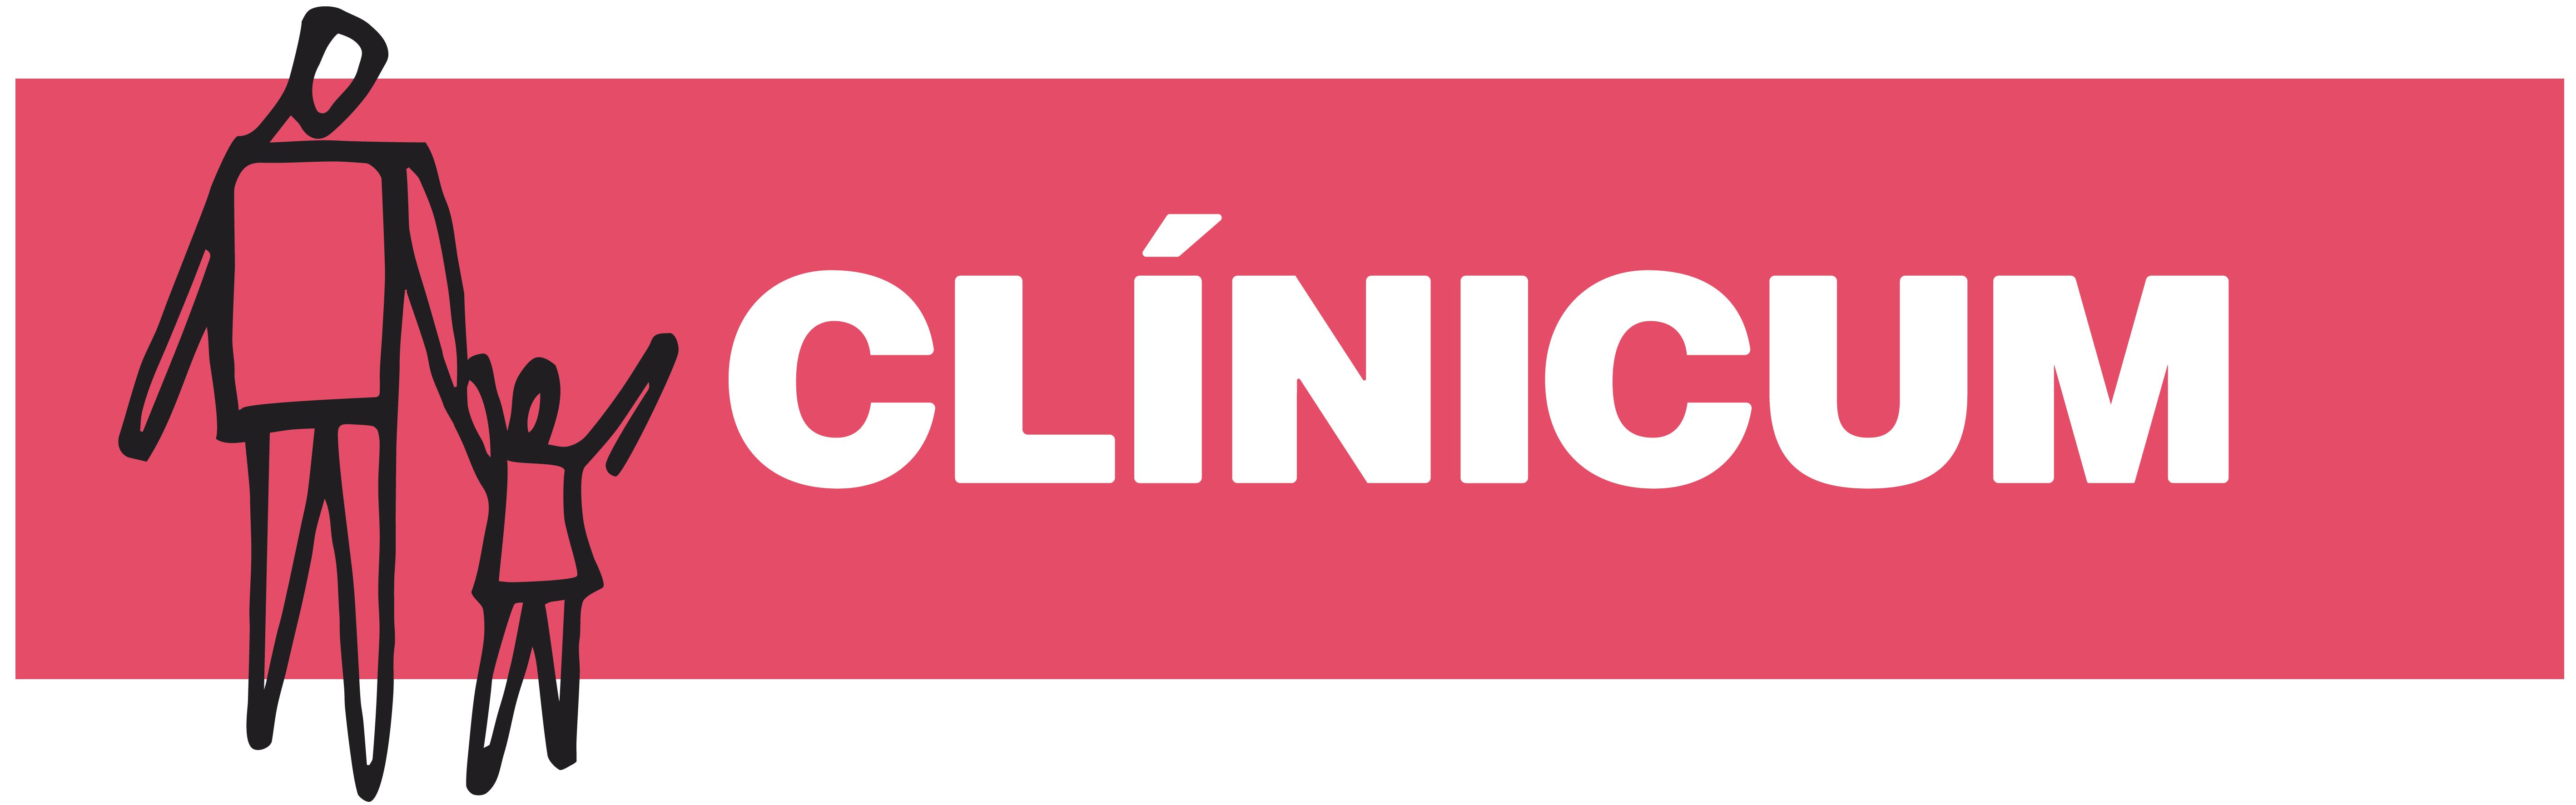 Clínicum_logo_ppal